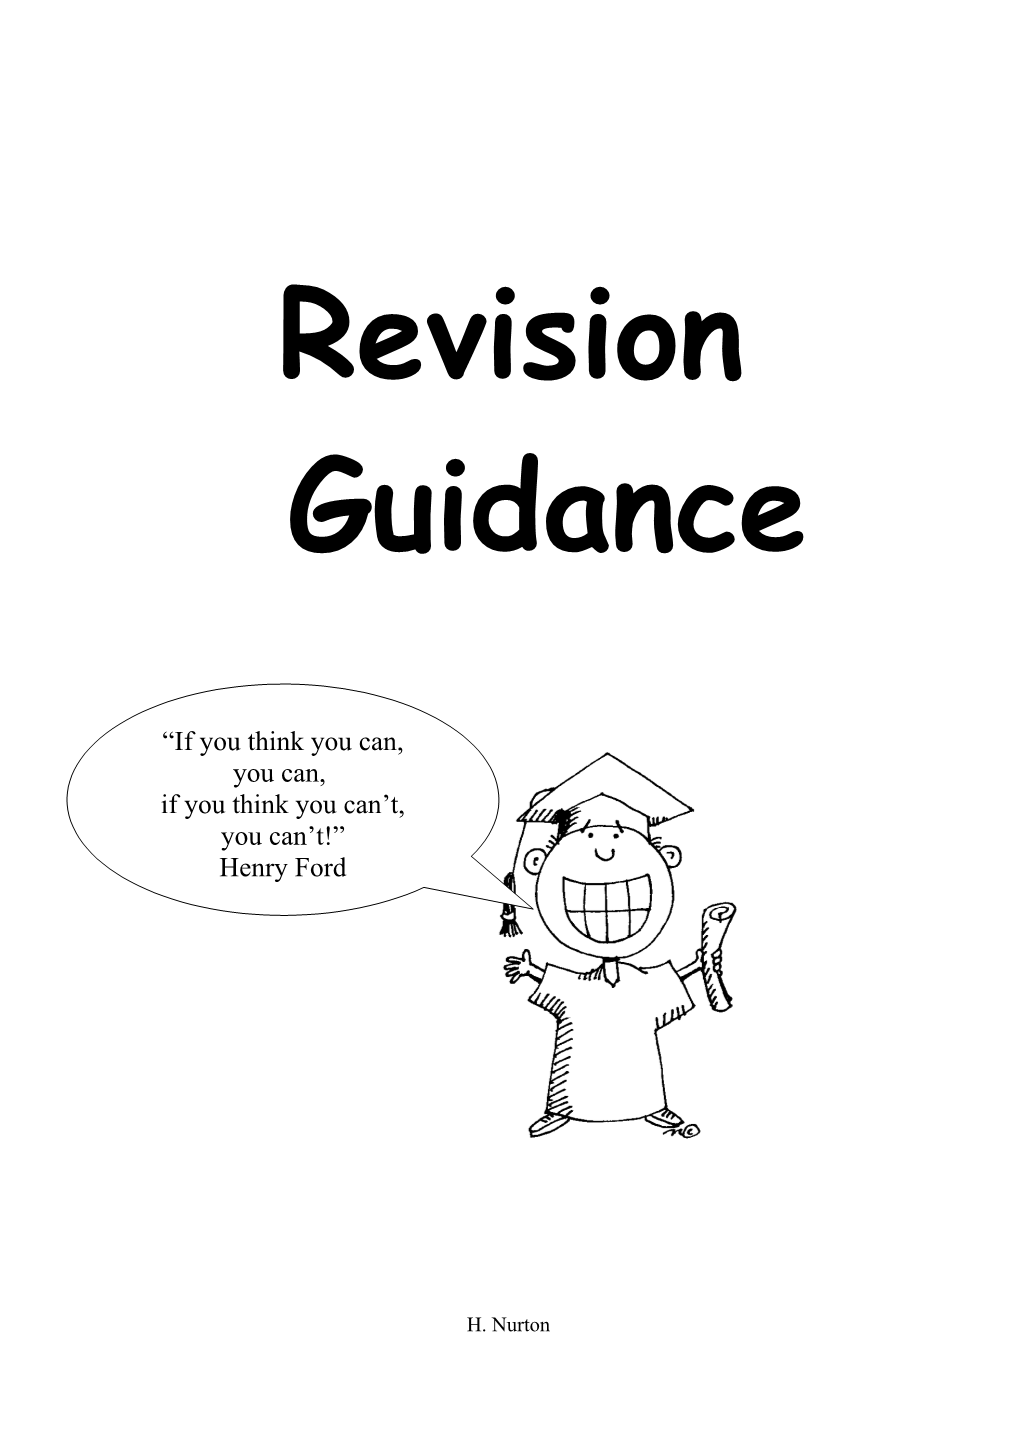 Top Ten Revision Tips